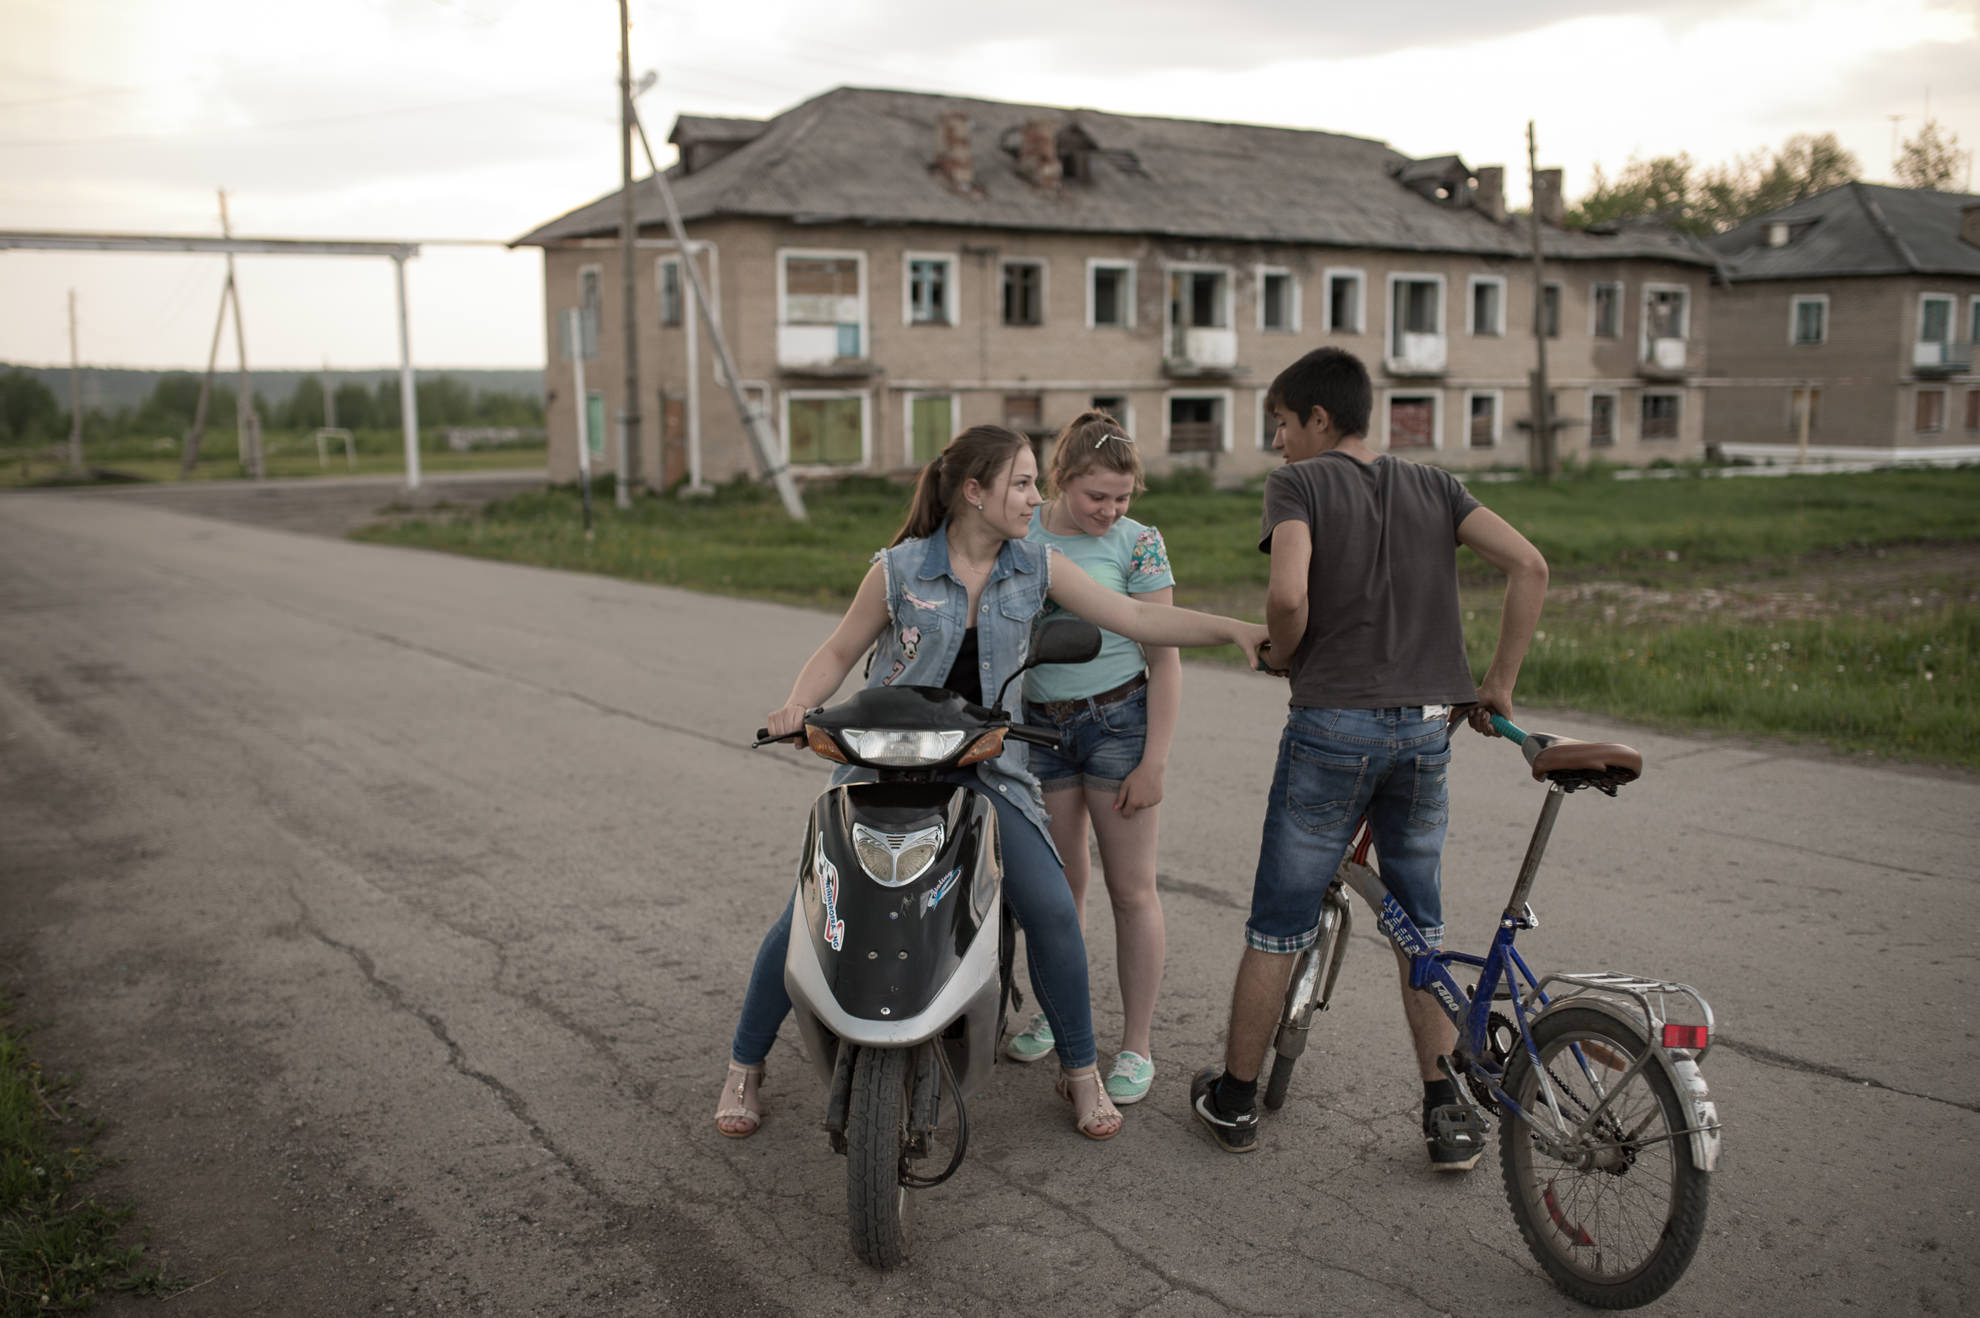 Детям и молодежи в городе скучно. В основном проводят время в интернете, заброшенных домах или гоняют на мотоциклах.